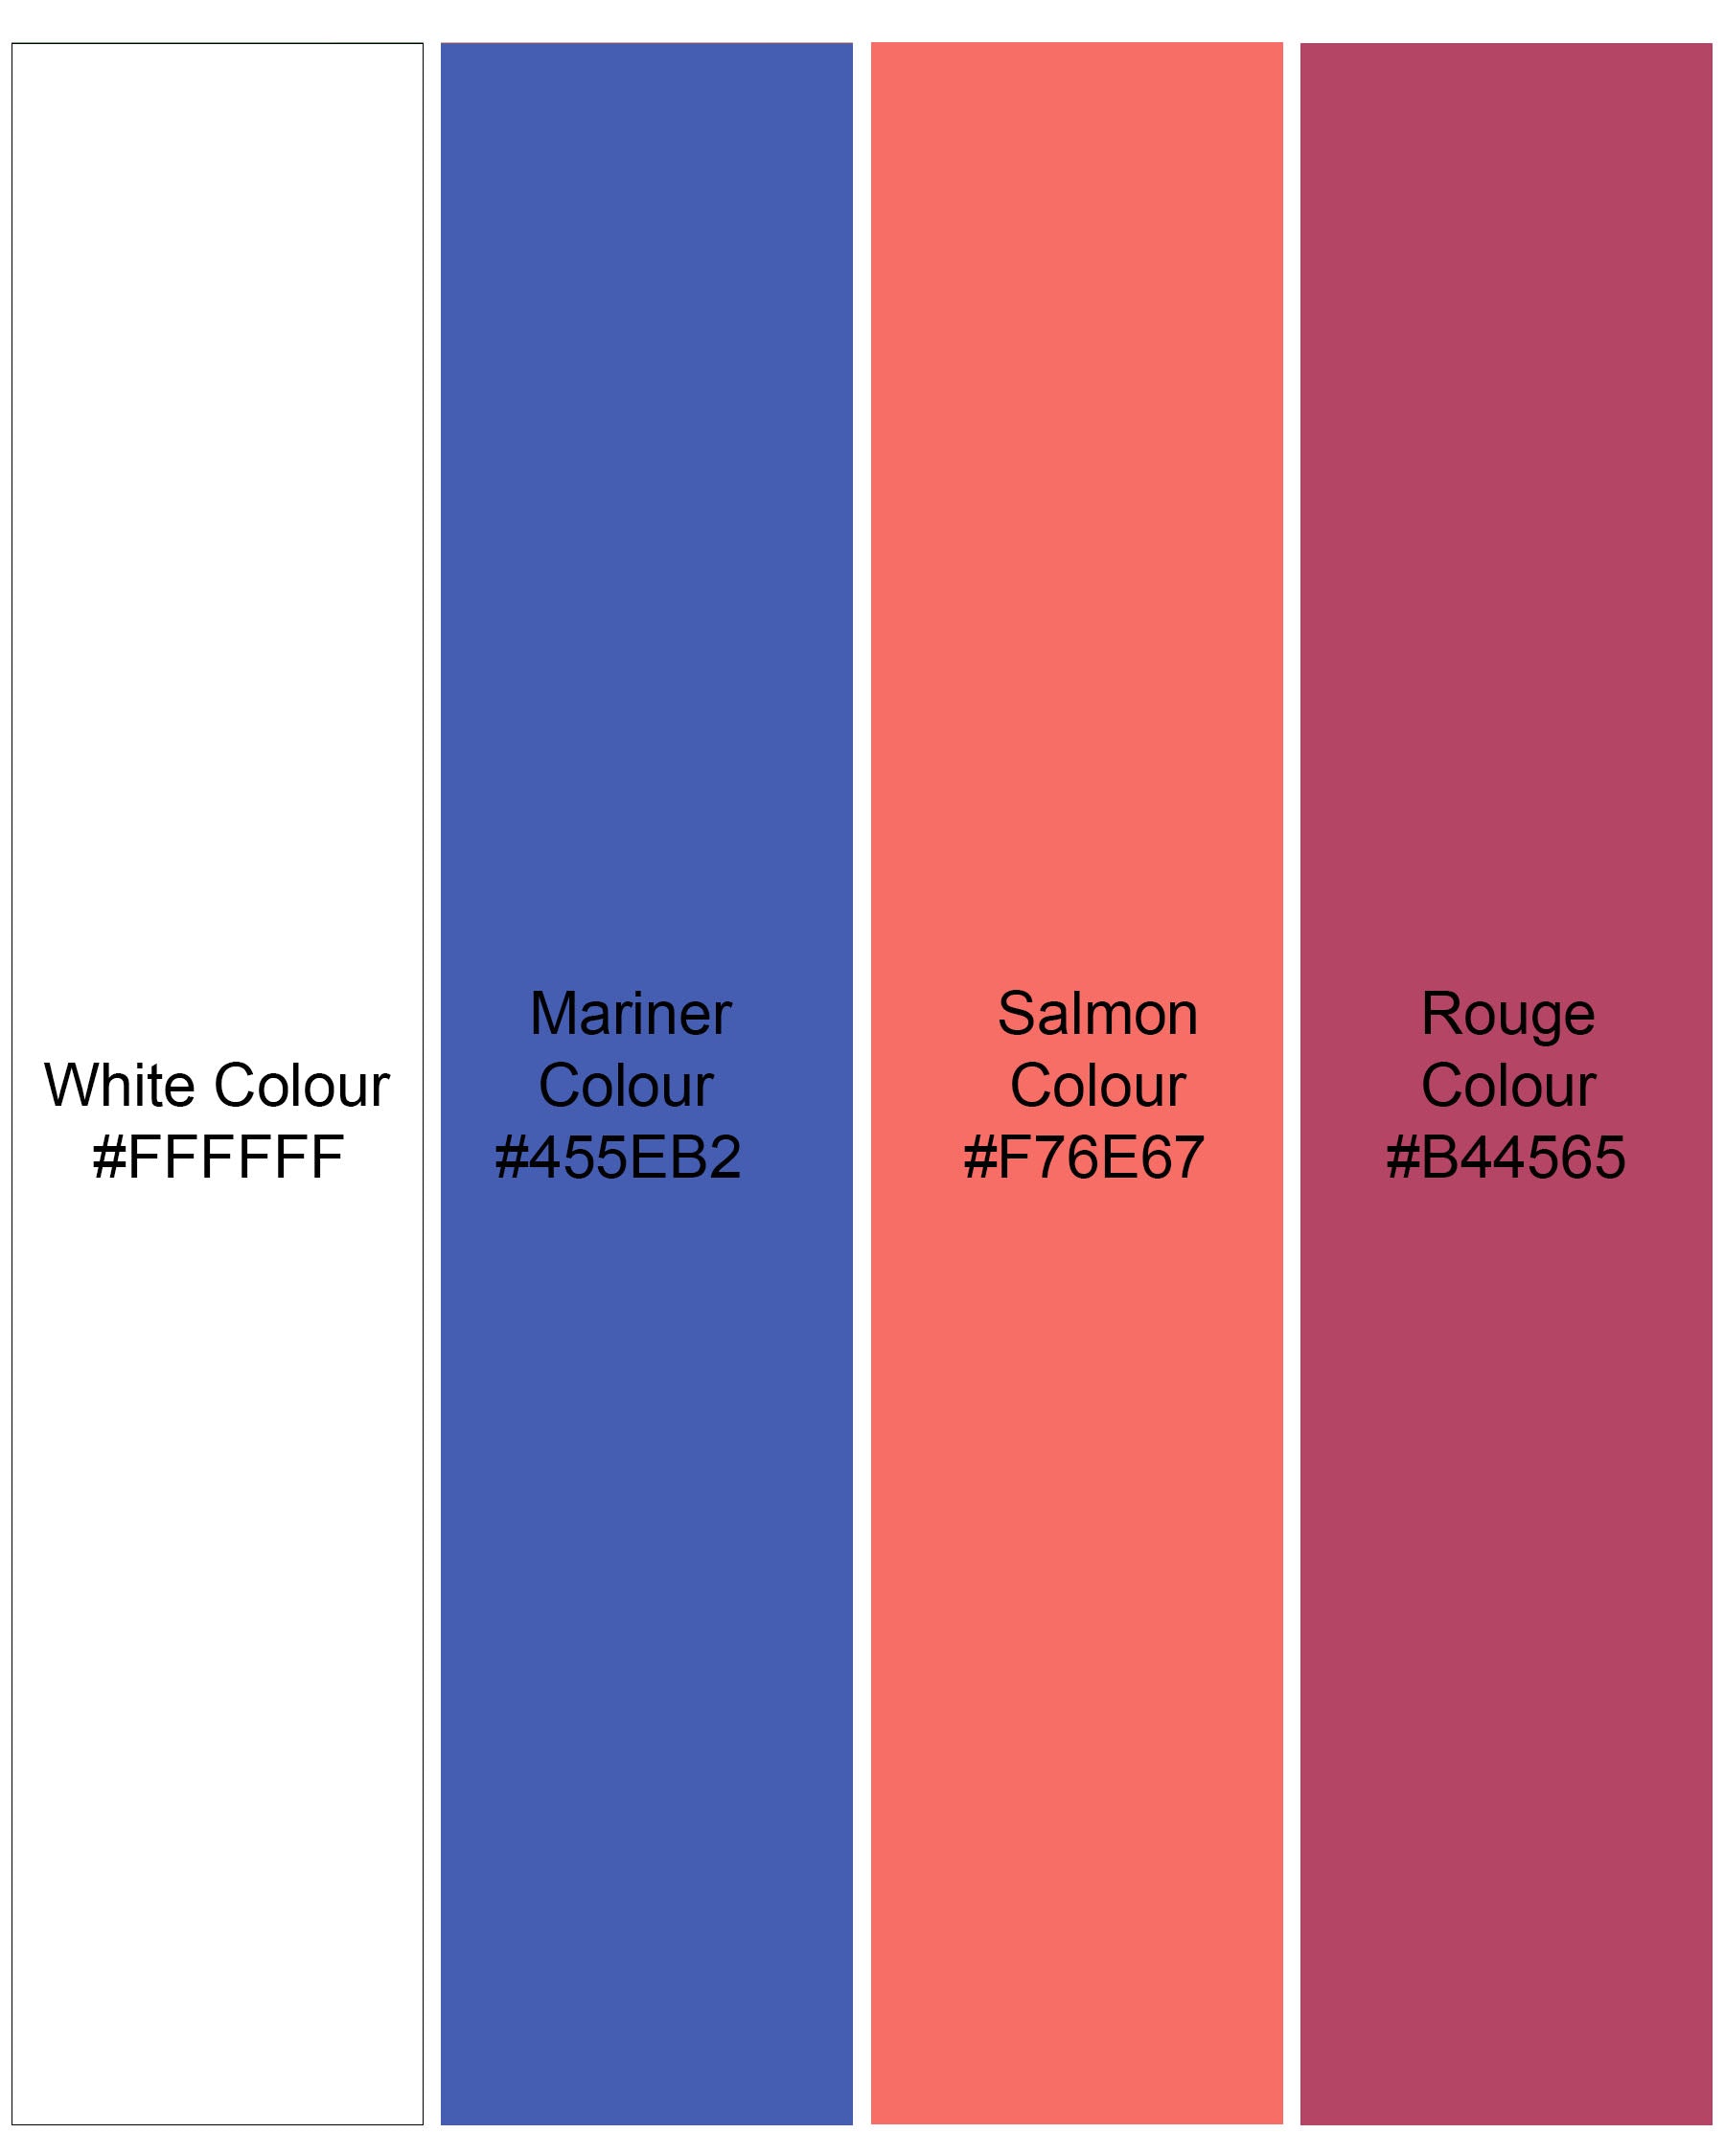 Salmon Orange And White Plaid Premium Cotton Shirt 7793-38,7793-38,7793-39,7793-39,7793-40,7793-40,7793-42,7793-42,7793-44,7793-44,7793-46,7793-46,7793-48,7793-48,7793-50,7793-50,7793-52,7793-52